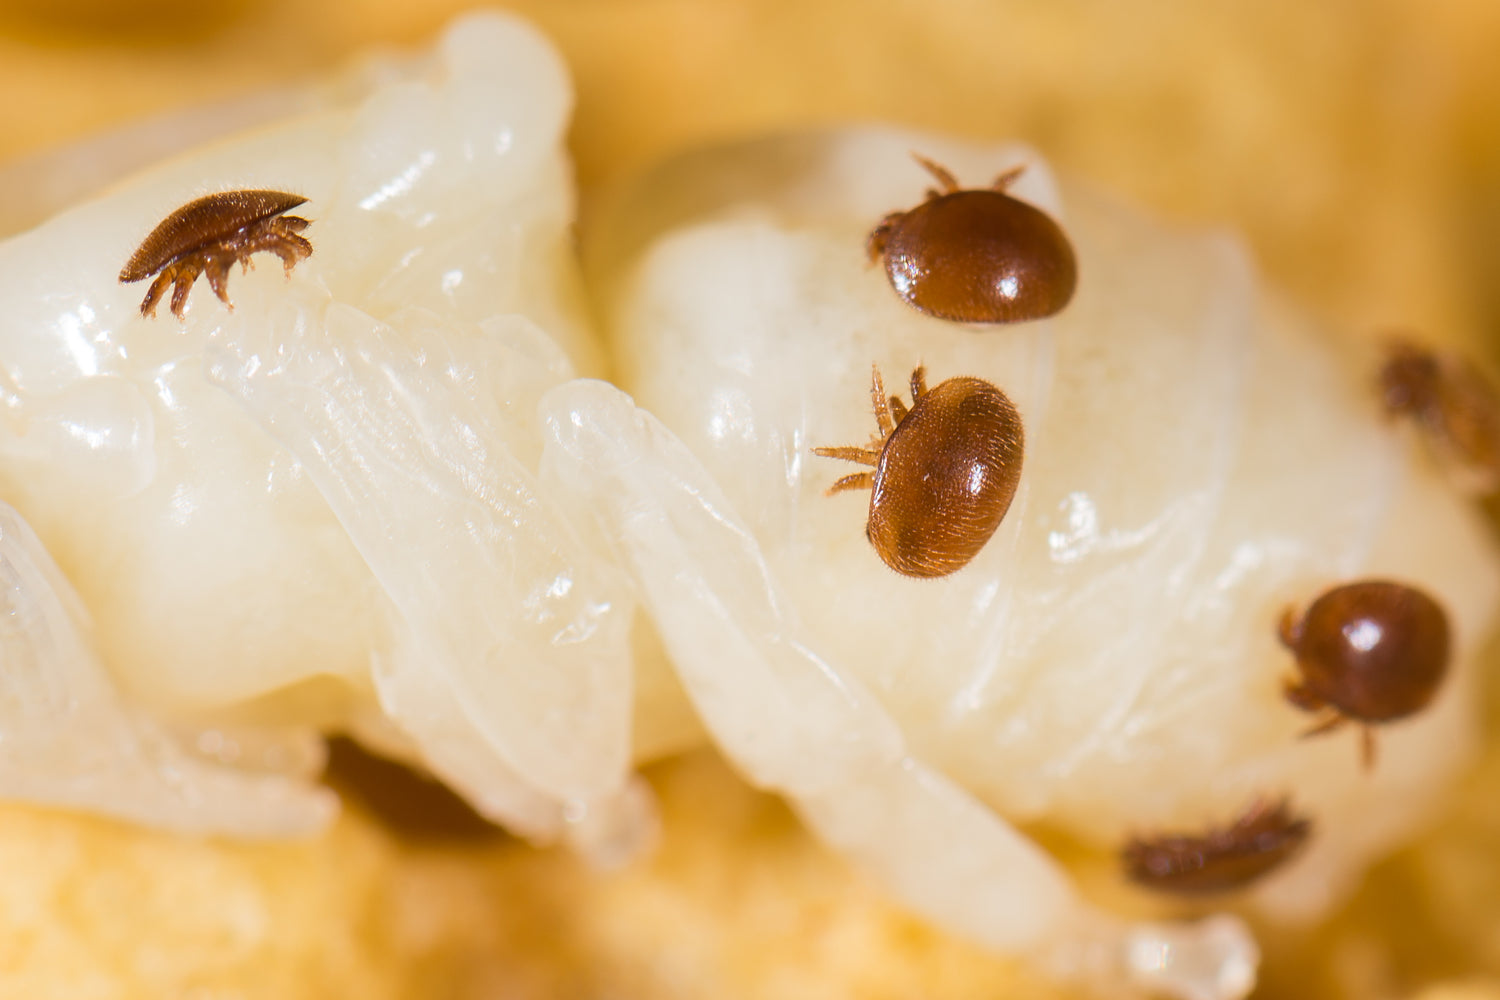 Varroa mite control treatment